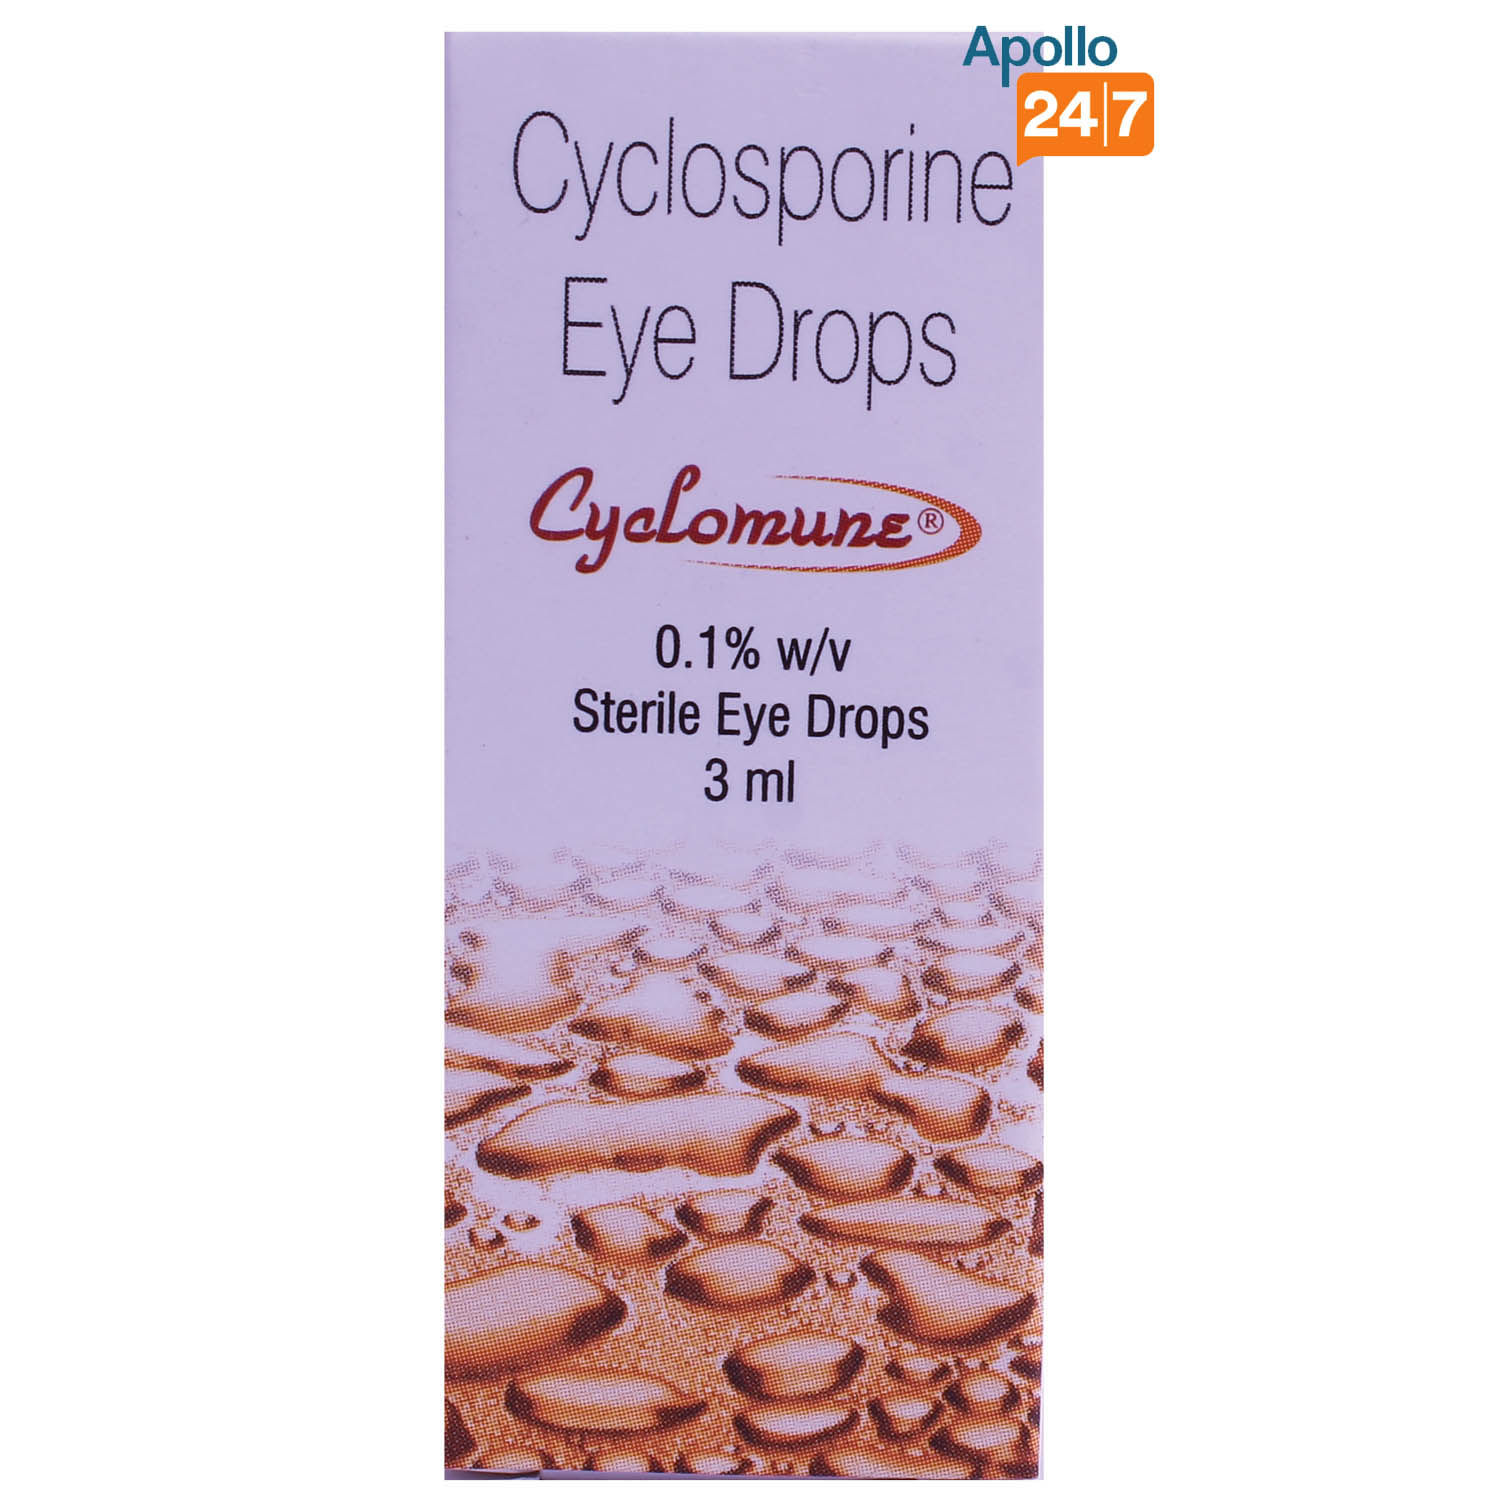 Buy Cyclomune 0.1% Eye Drops 3 ml Online